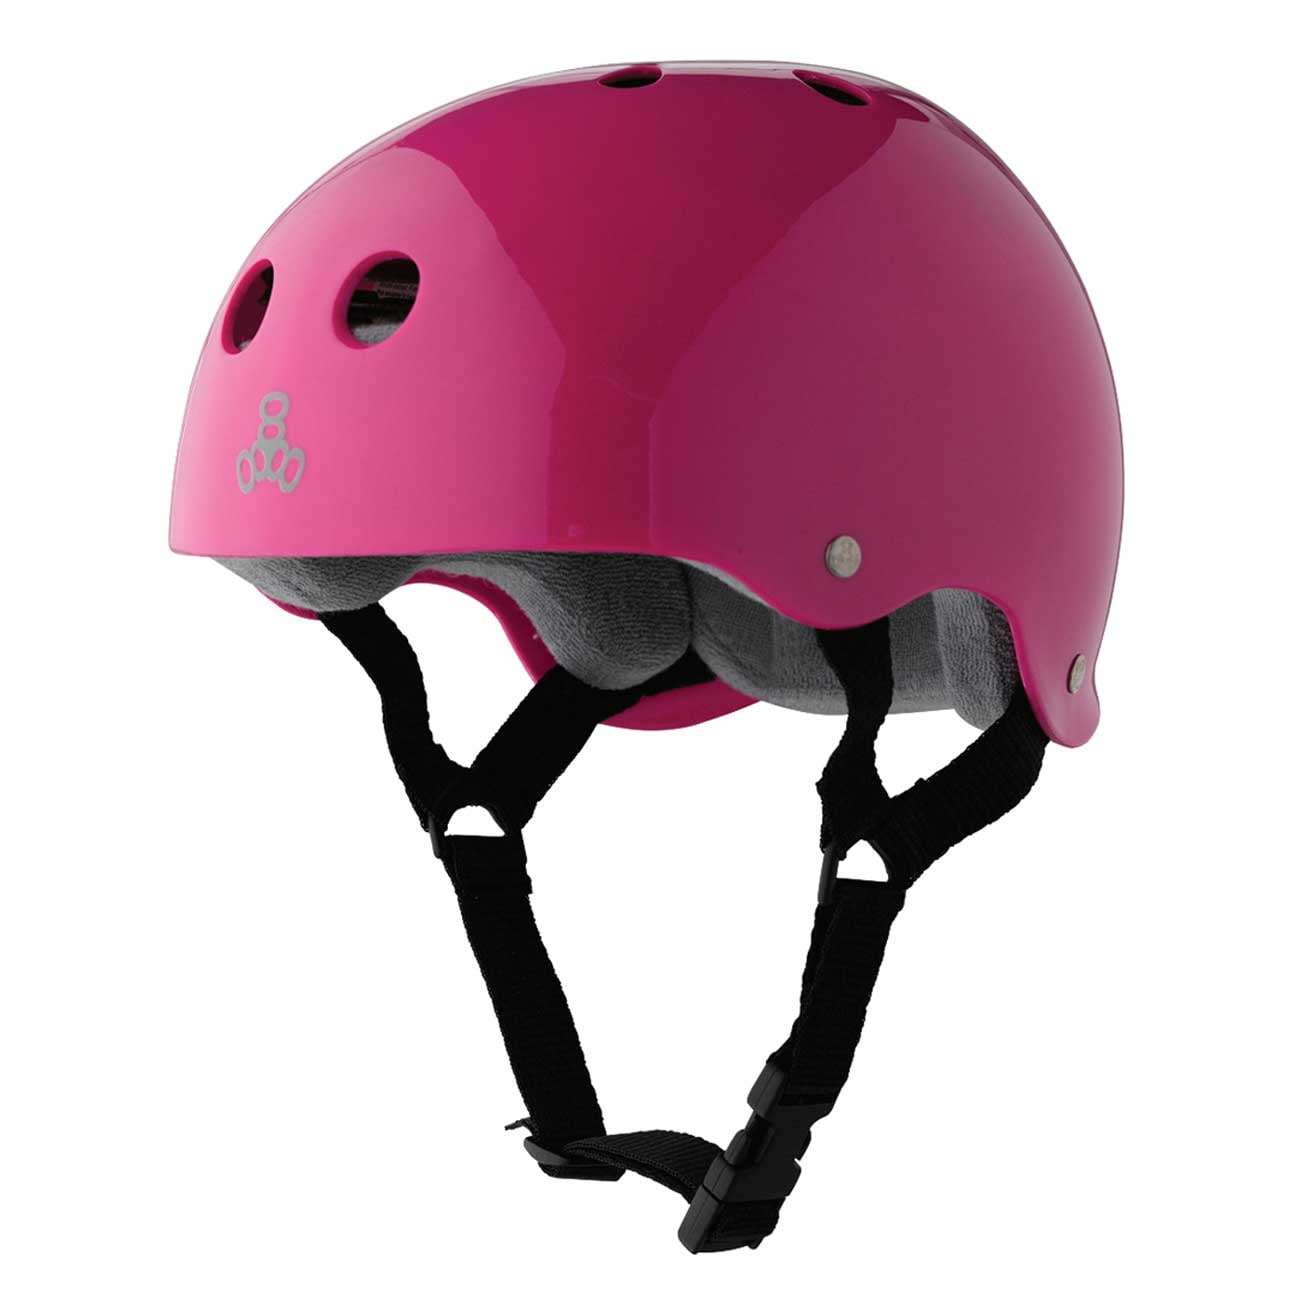 Carbon Rubber Triple 8 Sweatsaver Liner Skateboarding Helmet XL 1079 